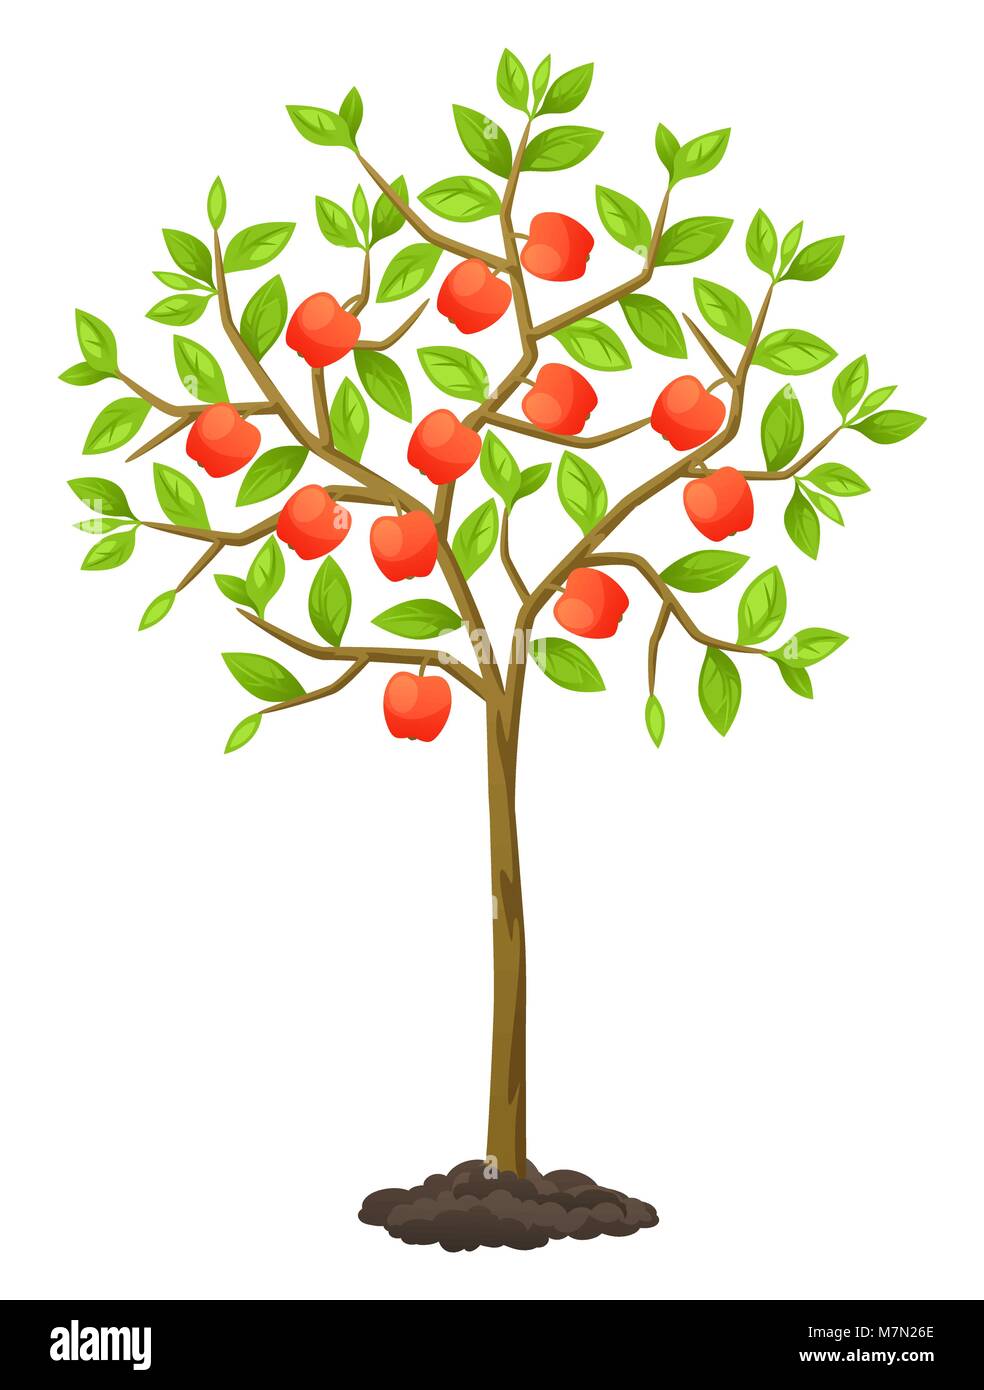 Frucht Baum mit Äpfeln. Abbildung für landwirtschaftliche Broschüren, Flyer Garten Stock Vektor